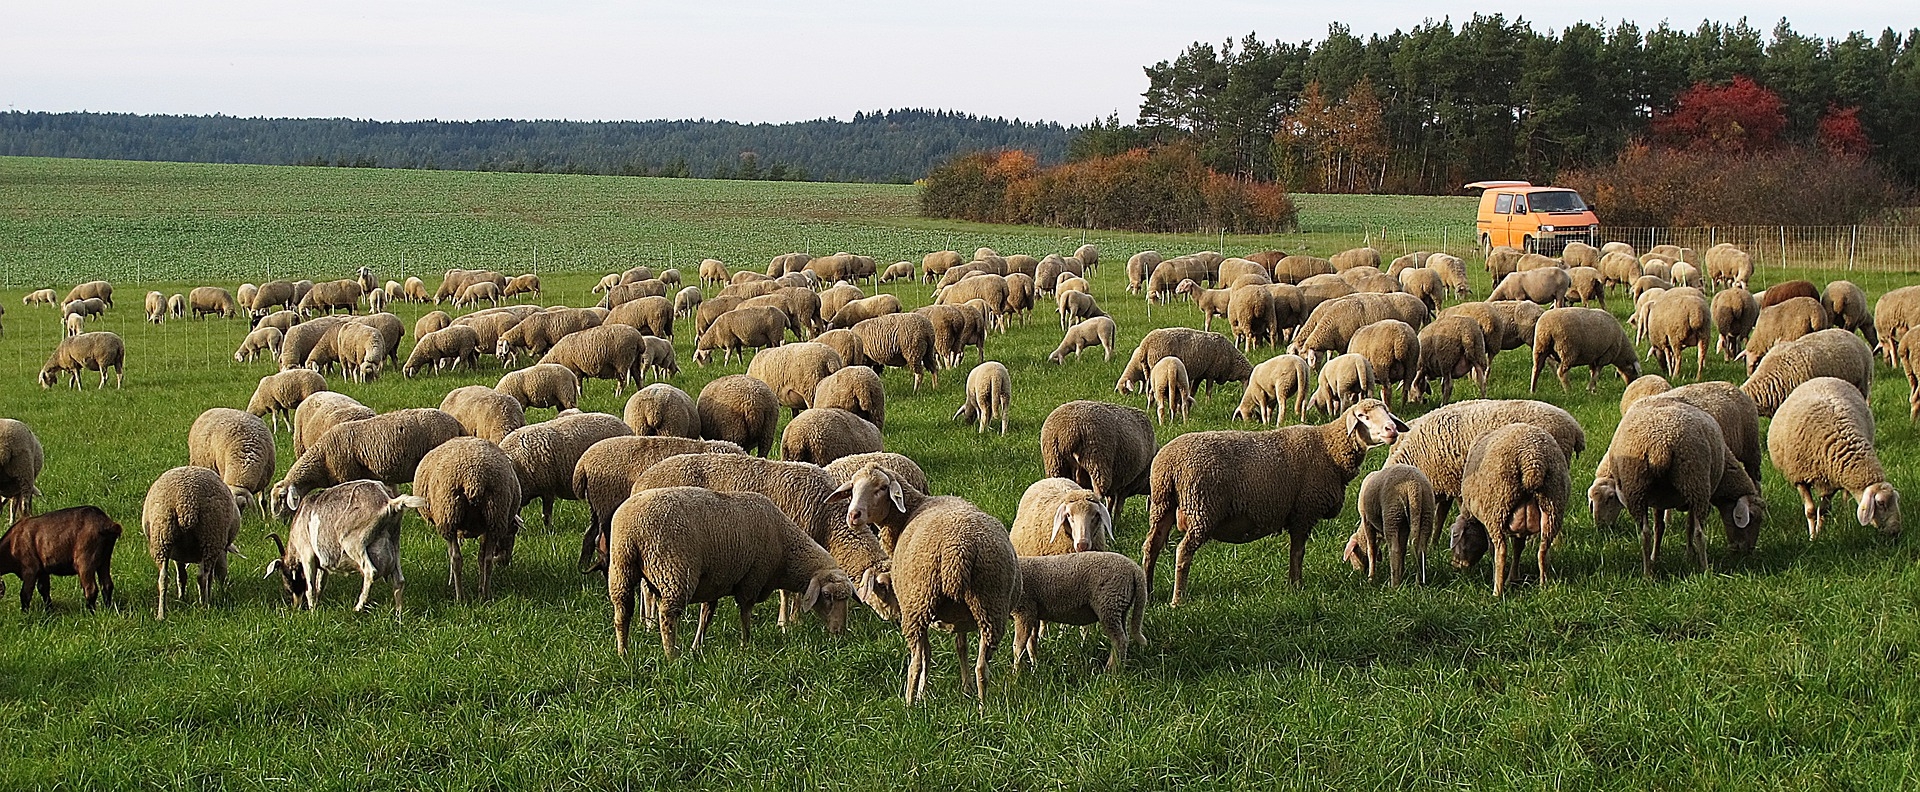 Schafwolle, ein Reststoff aus der Weidewirtschaft, kann gut als Dämmmaterial verwendet werden.